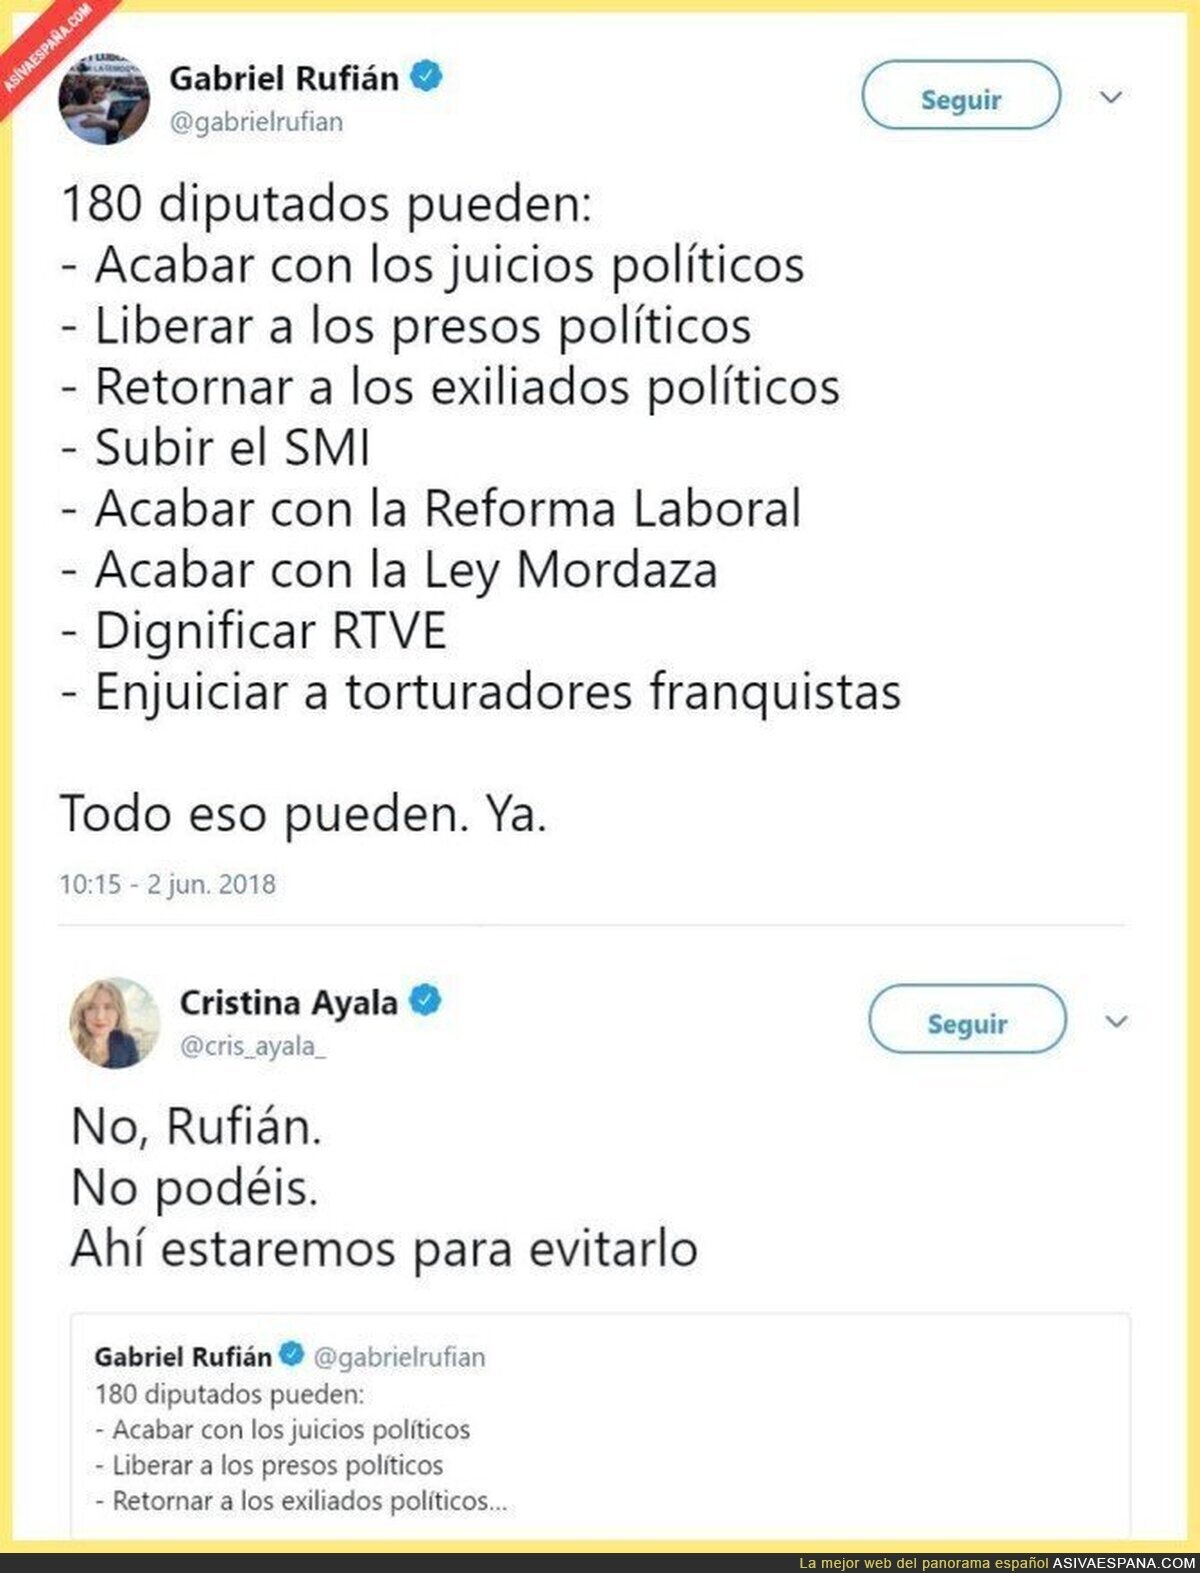 Senadora del PP dice que evitará "dignificar RTVE", "acabar con ley mordaza", y enjuiciar a franquistas